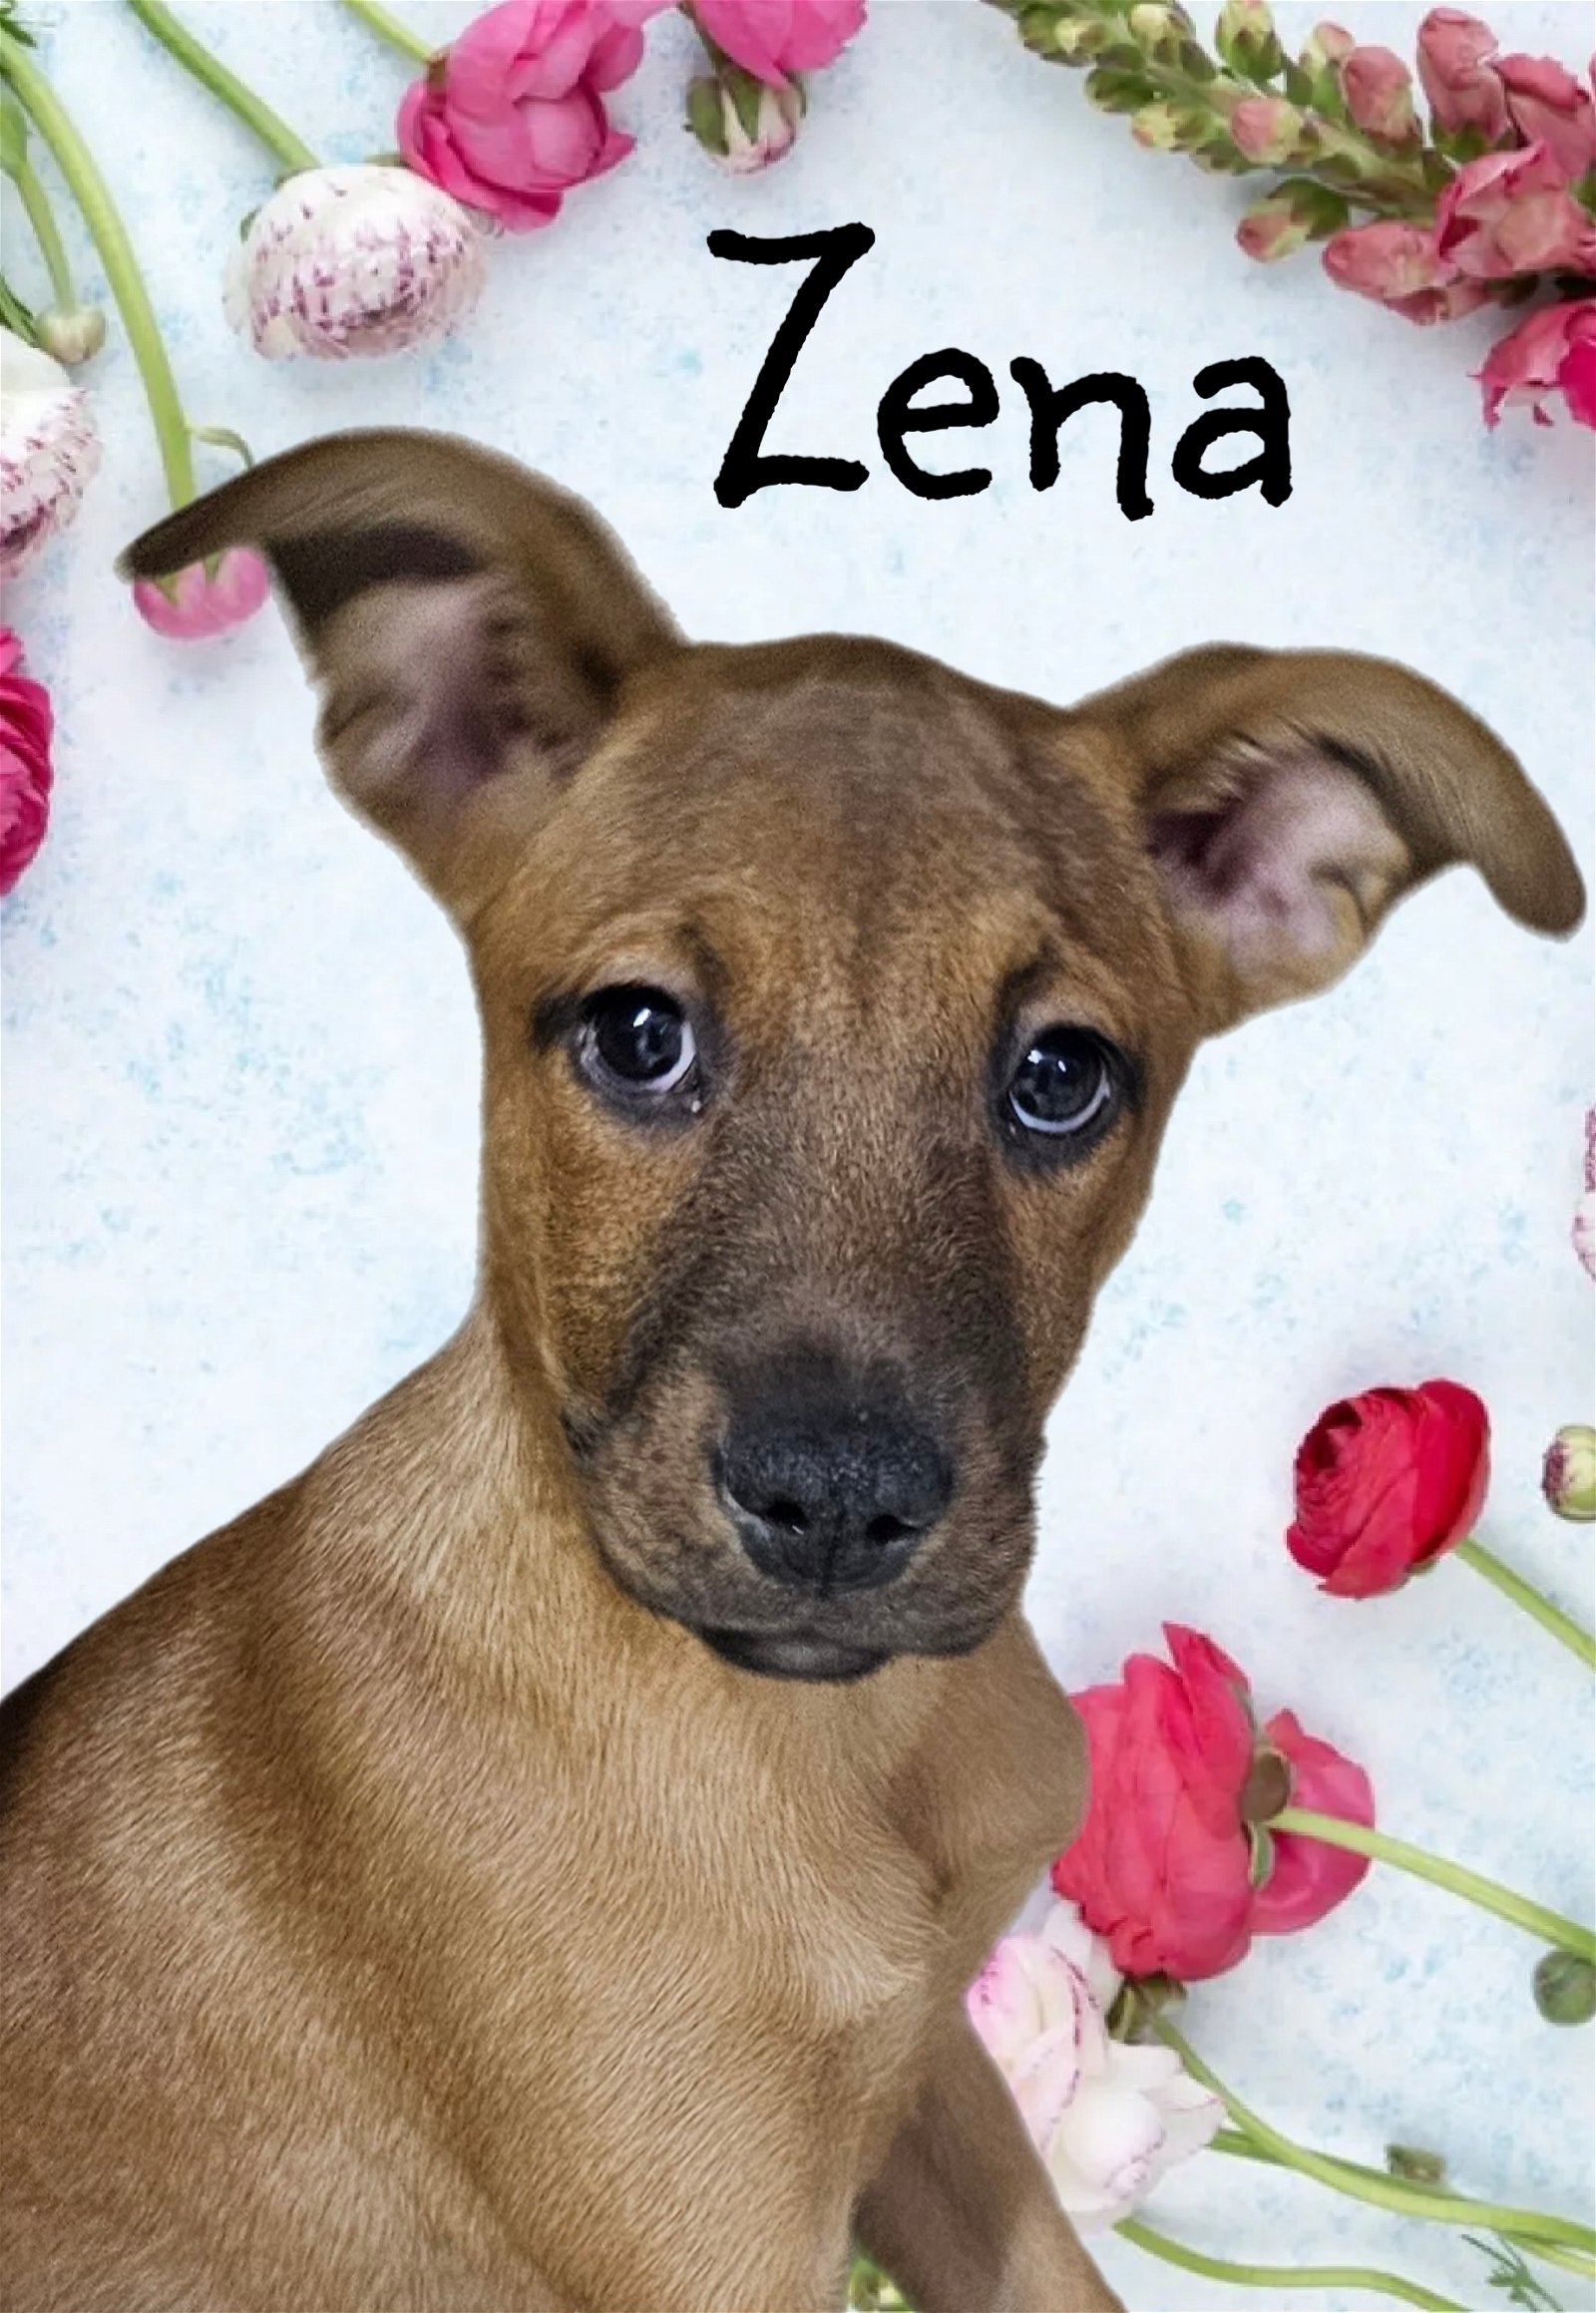 adoptable Dog in Phelan, CA named Zena